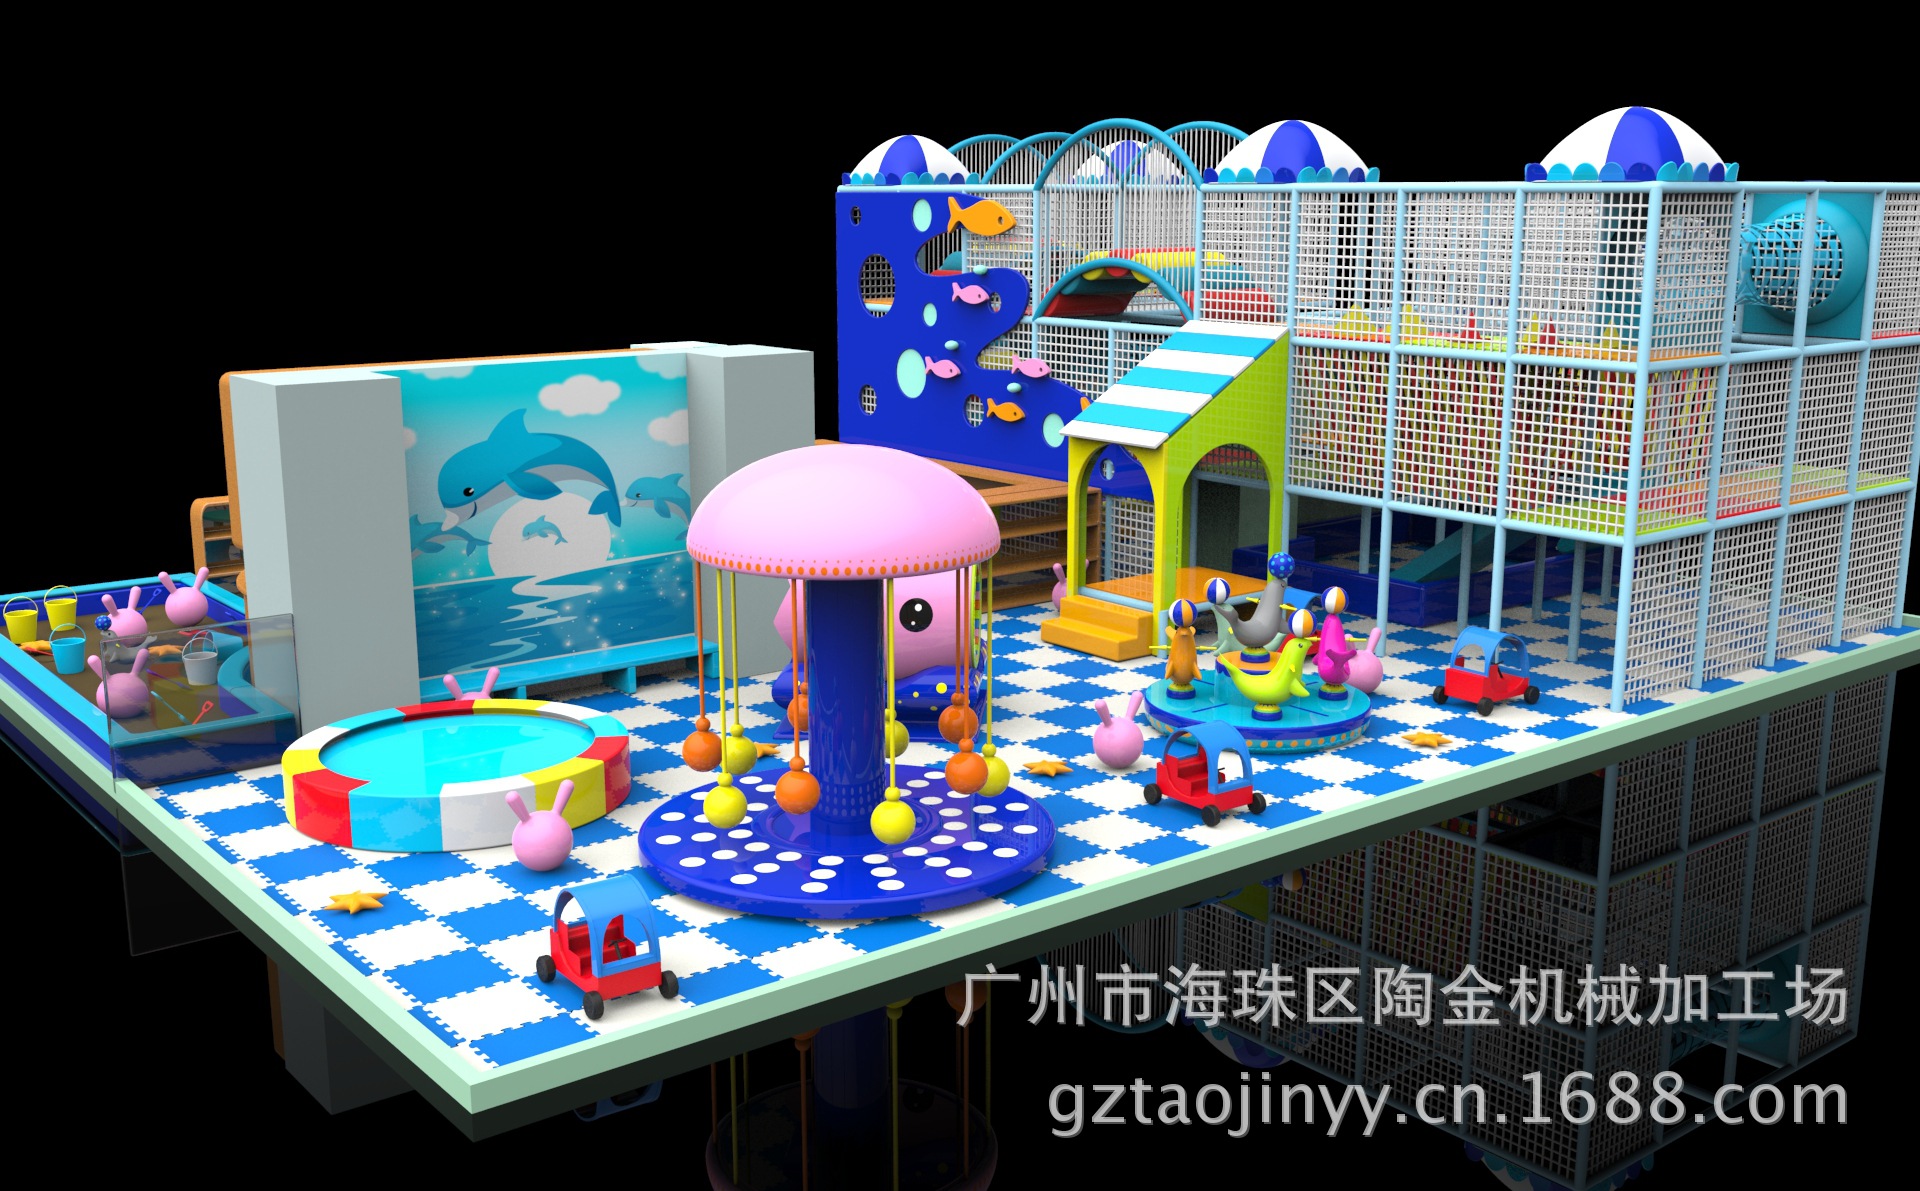 【最新型室内儿童游乐设施 爱乐游 游乐园设备